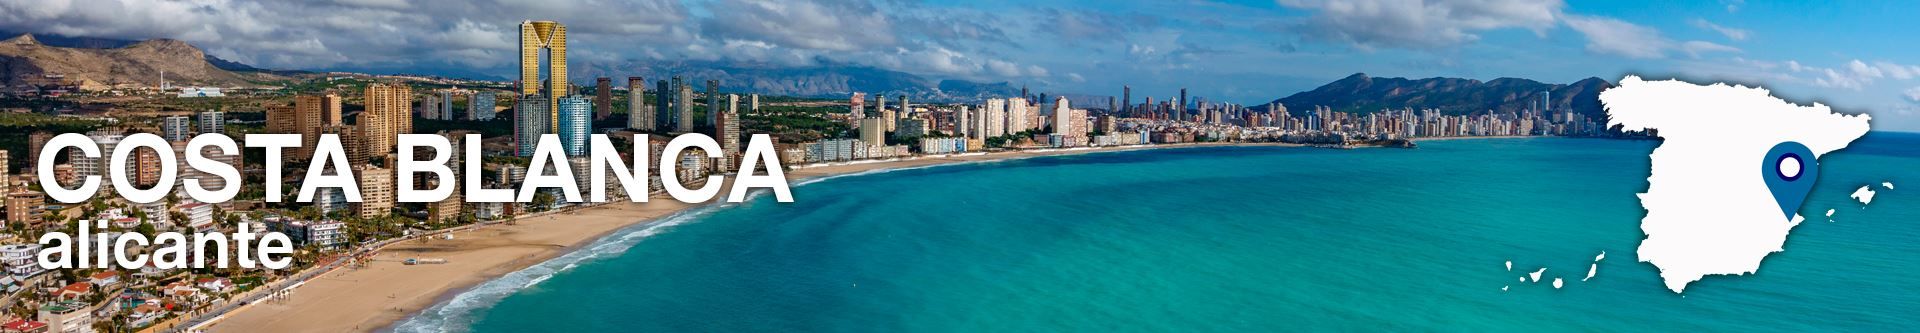 Hoteles en Costa Blanca Alicante - No pagues más por lo mismo